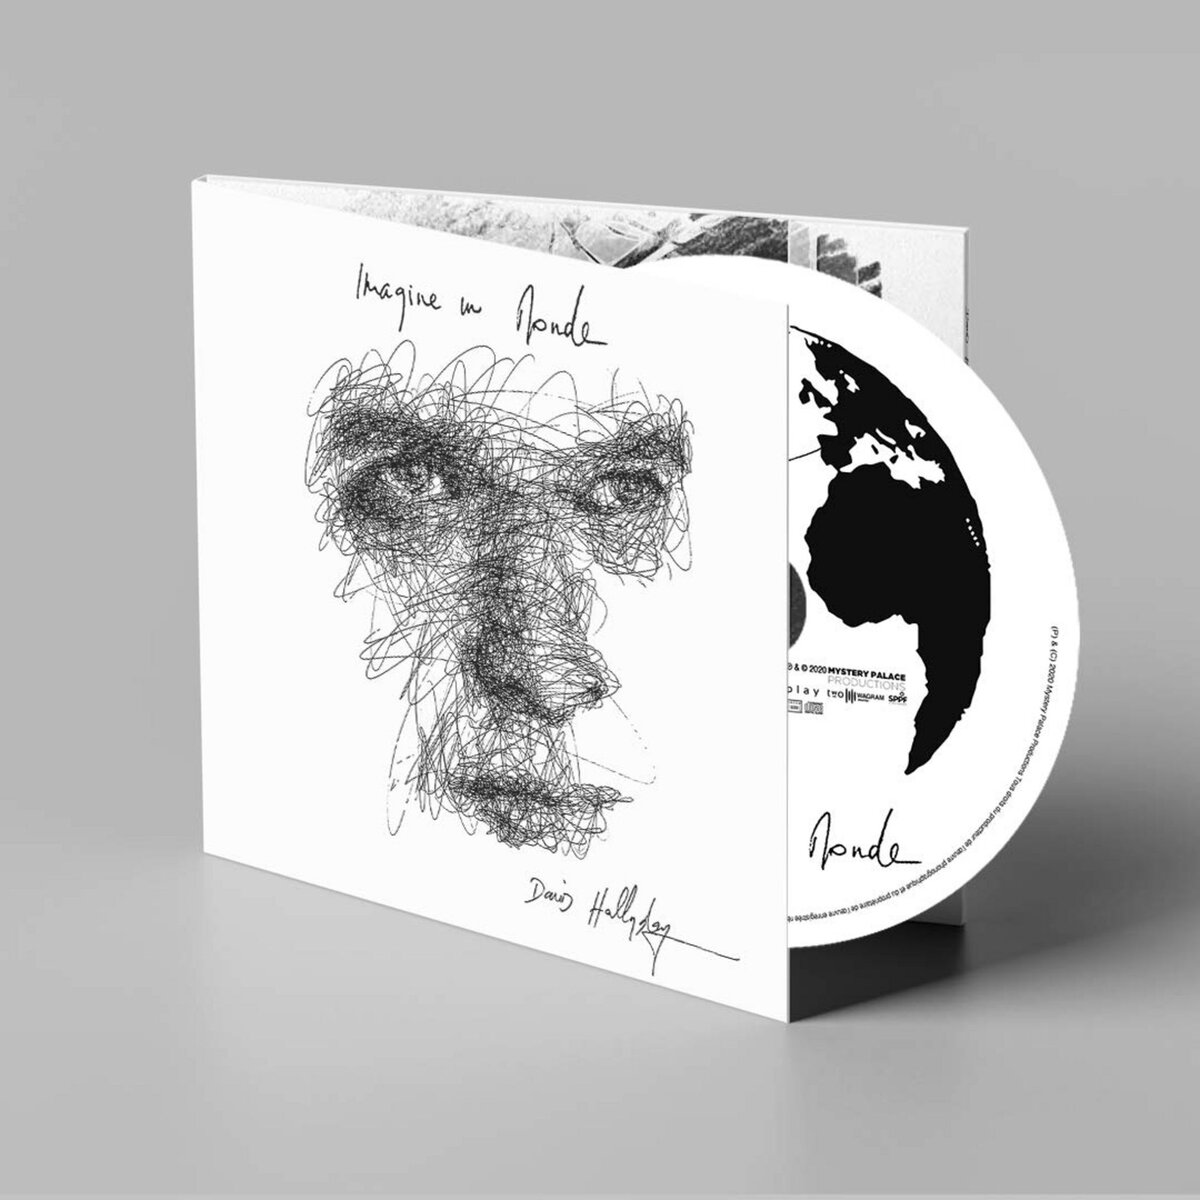 Imagine un monde - David Hallyday CD